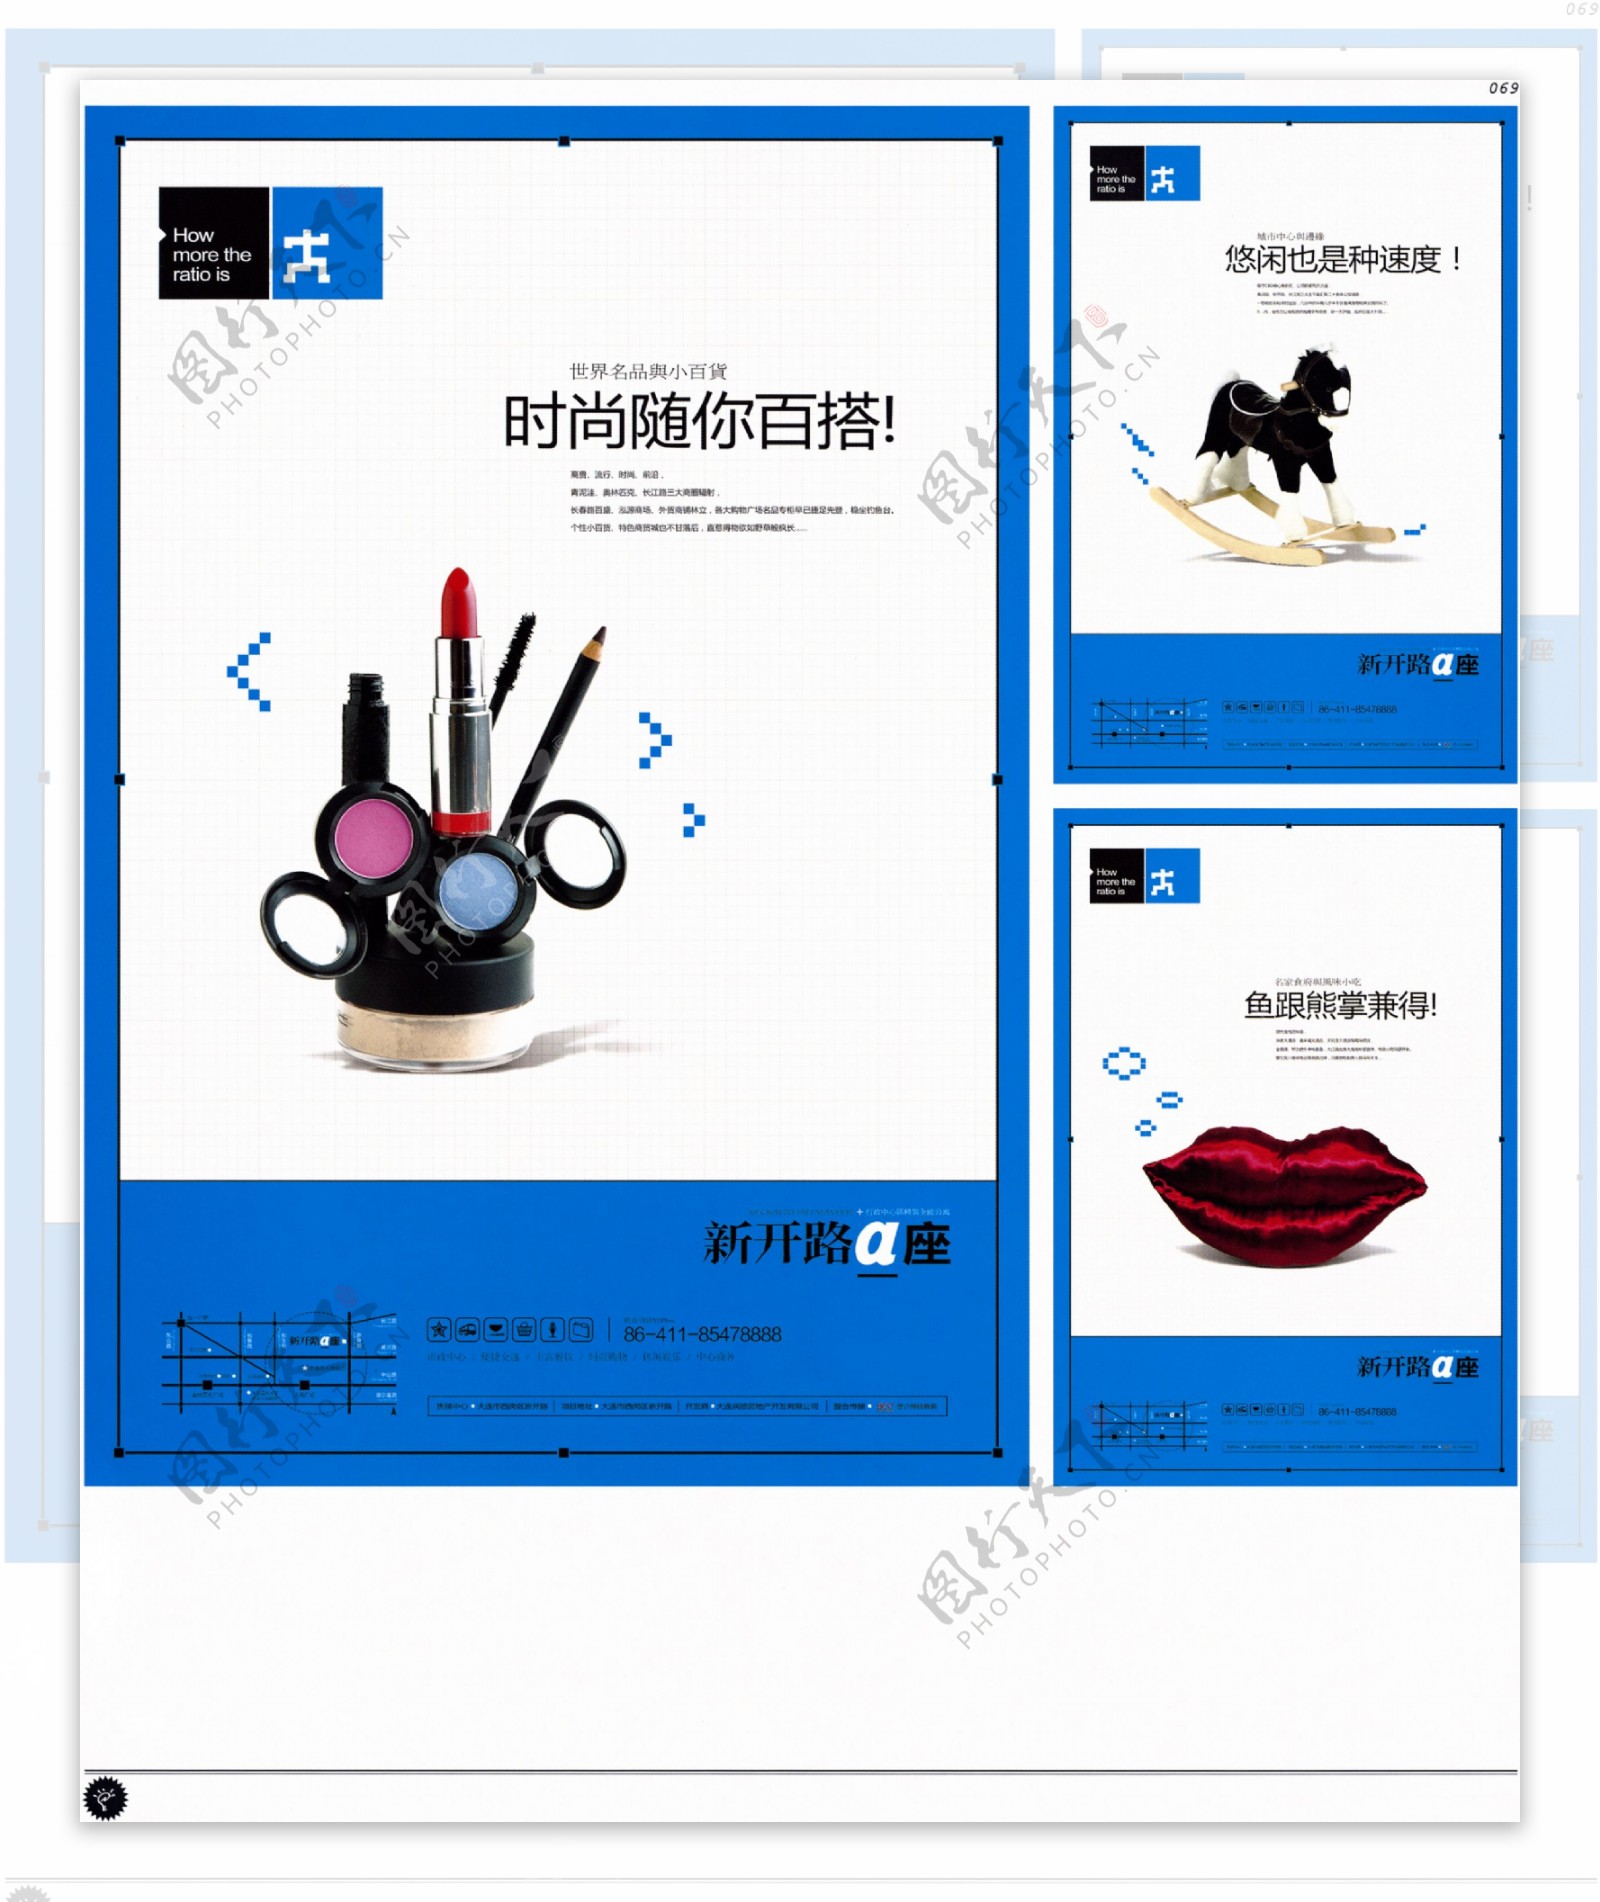 中国房地产广告年鉴第一册创意设计0066